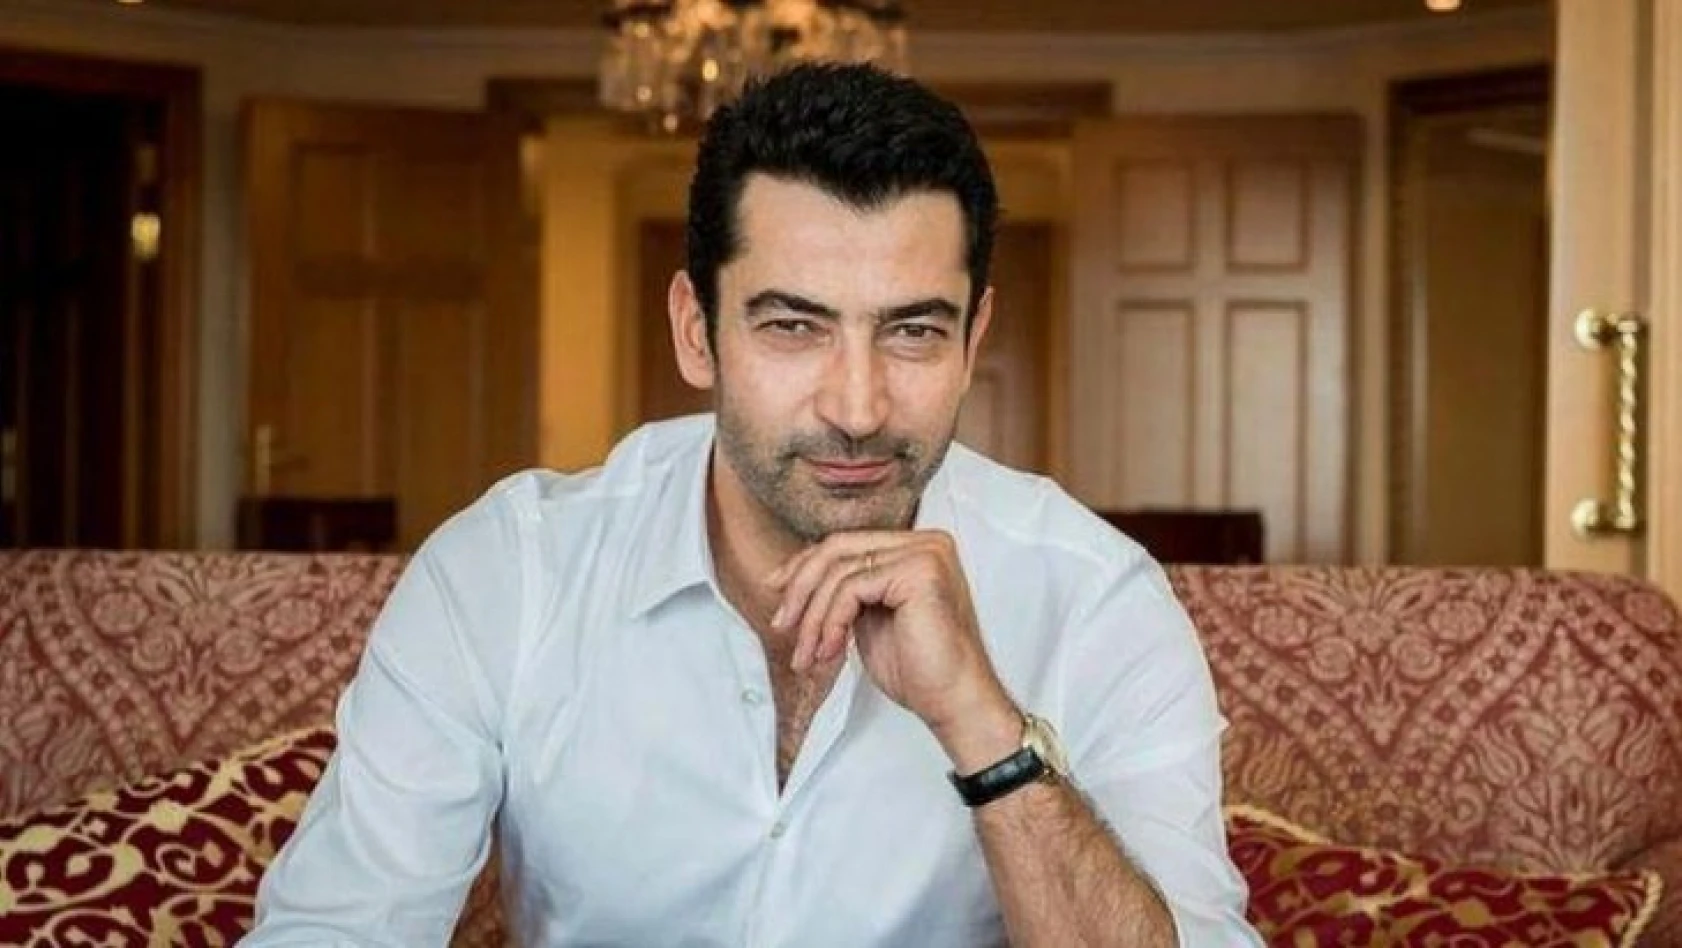 Oyuncu Kenan İmirzalıoğlu, korona virüse yakalandı